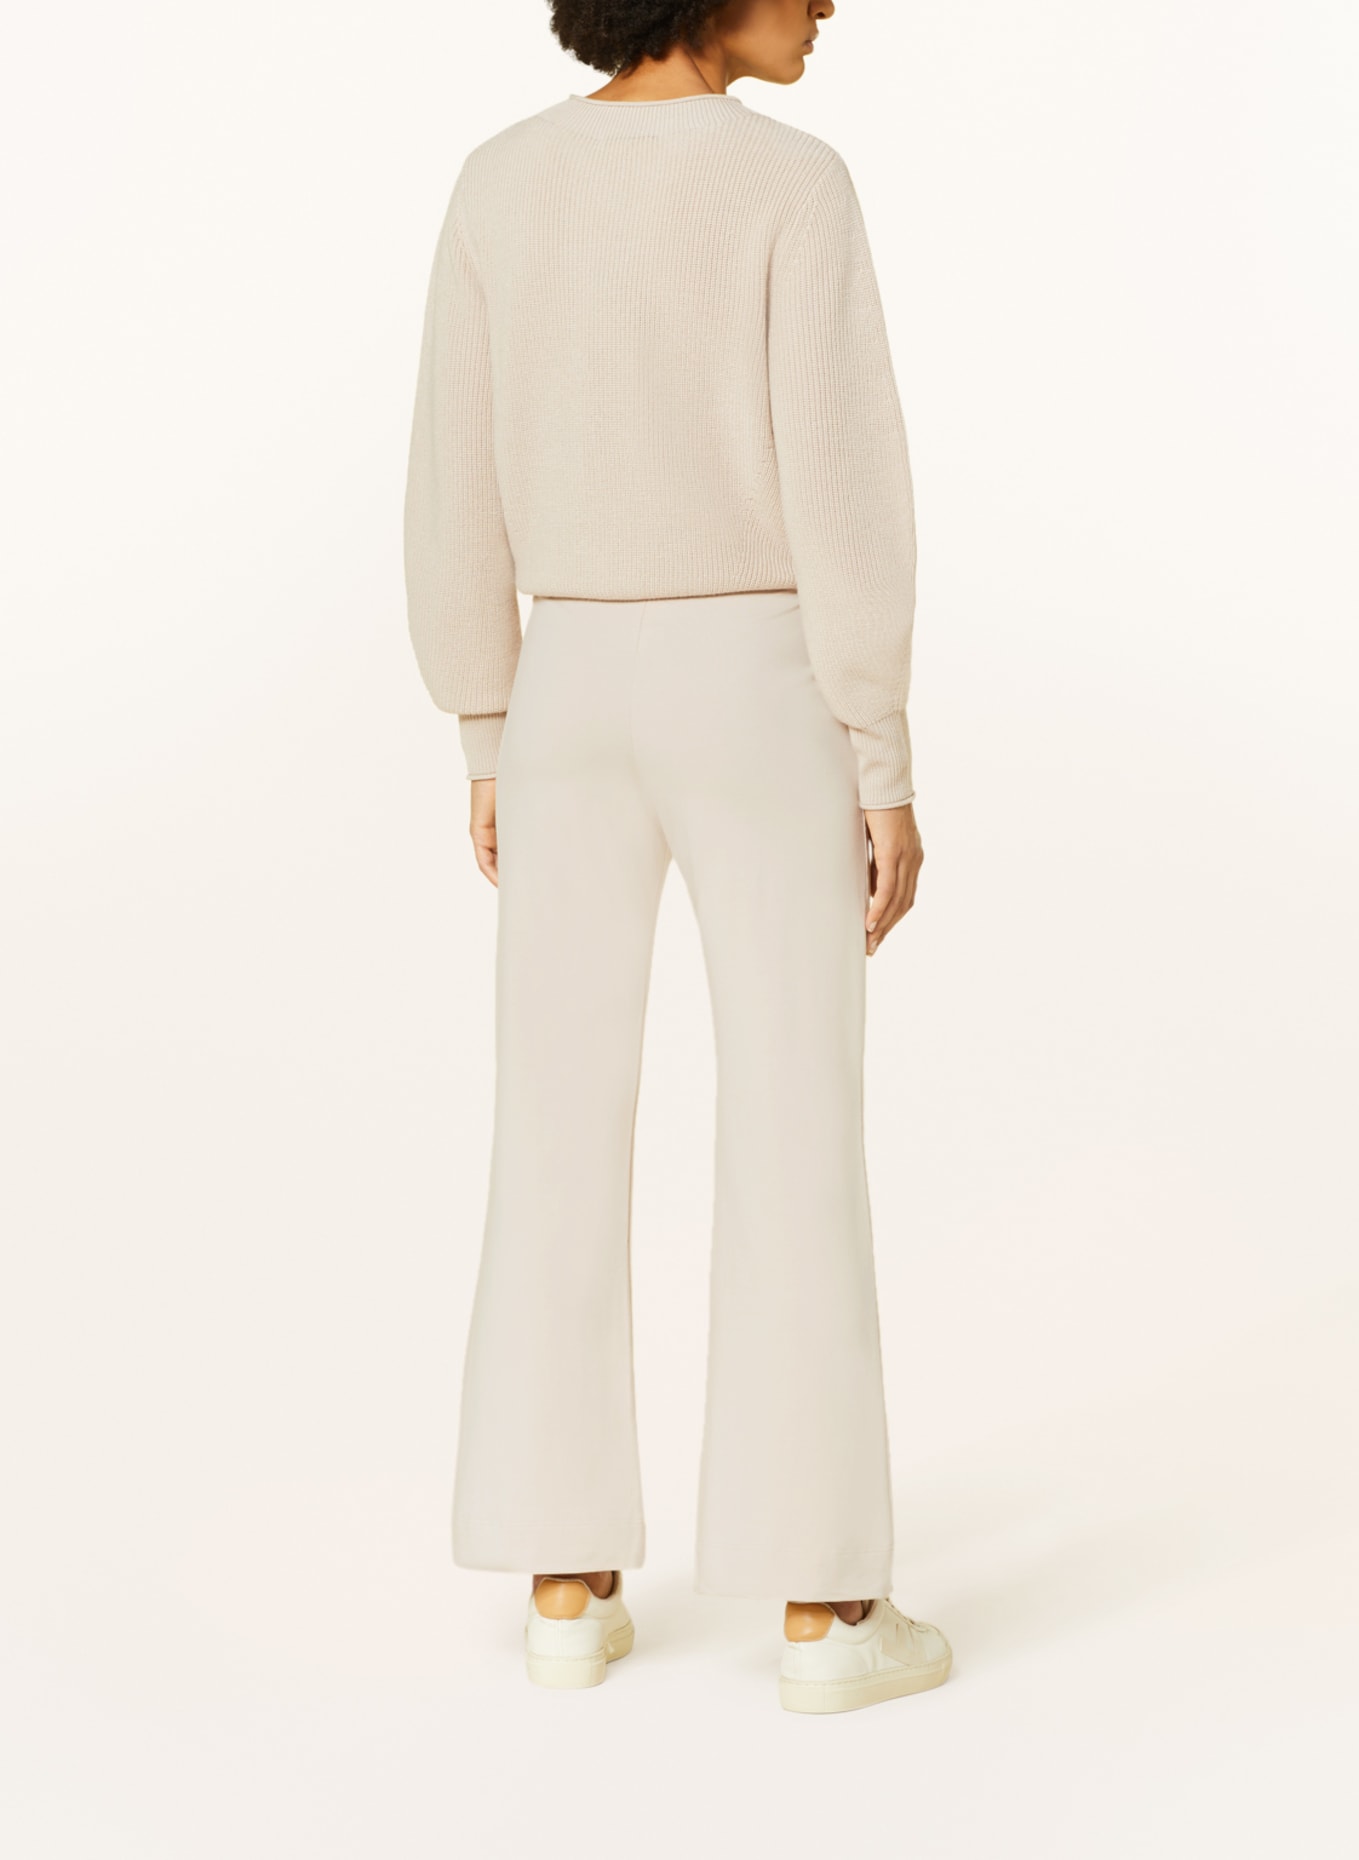 lilienfels Jersey pants, Color: CREAM (Image 3)